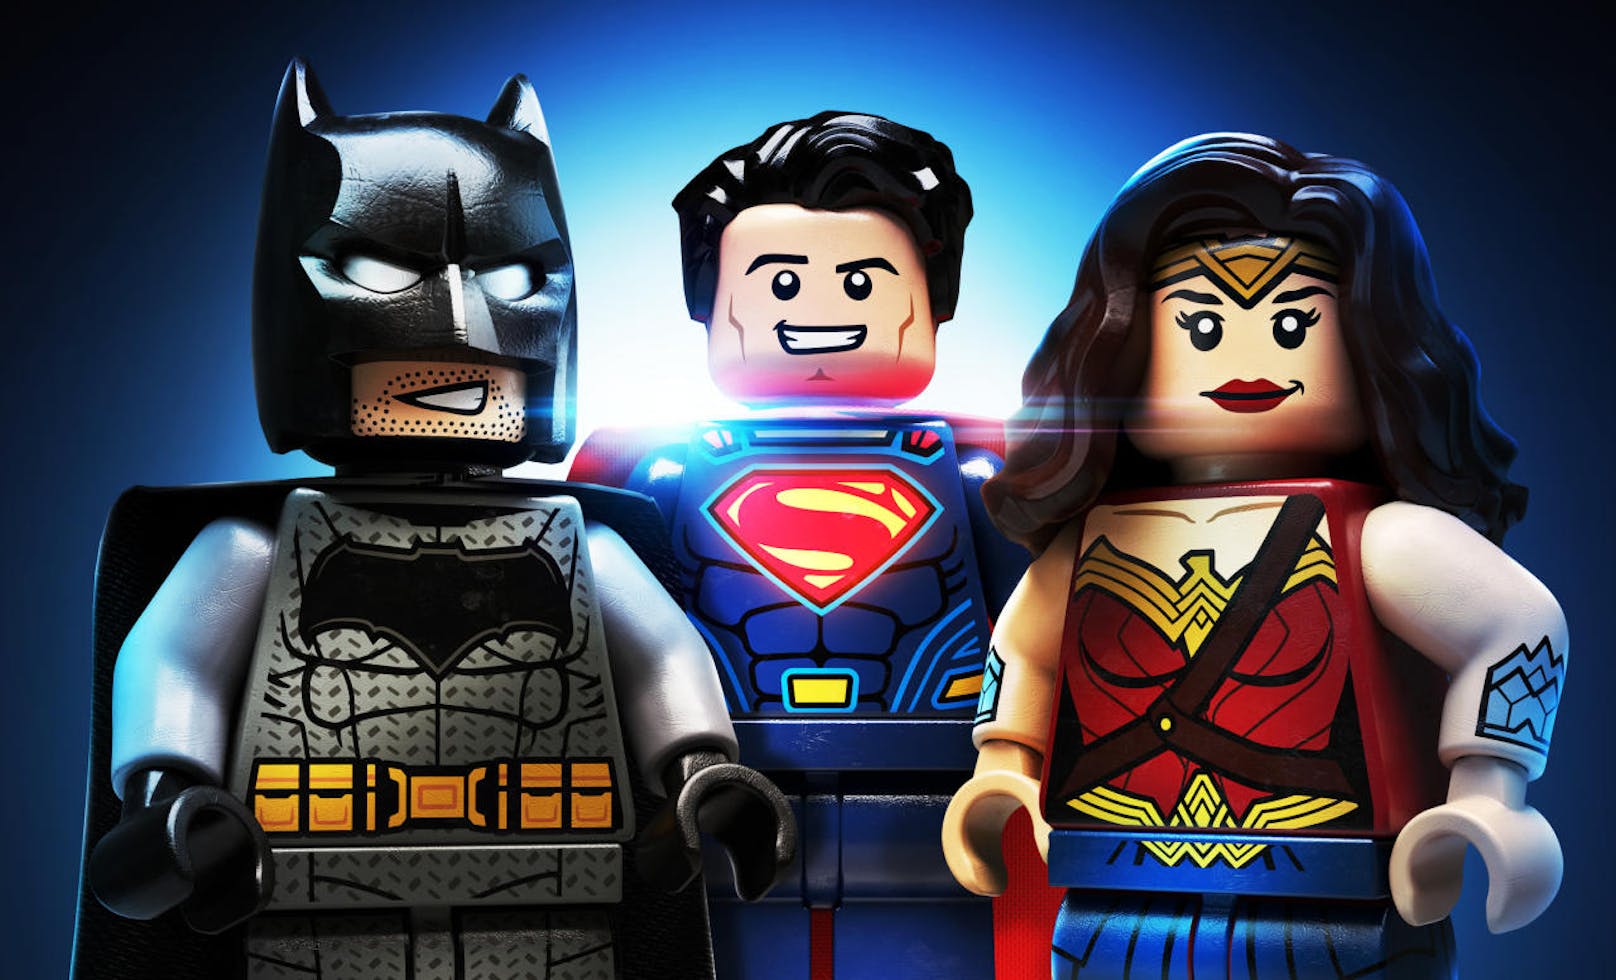 Warner Bros. Interactive hat das DC-Filme Character-Pack für Lego DC Super-Villains für PlayStation 4, Xbox One, Nintendo Switch und PC veröffentlicht. Das neue Paket enthält DC-Superhelden und Superschurken - einschließlich Wonder Woman, Batman, Flash, Superman, Cyborg und Deathstroke. Der Look der Charaktere orientiert sich an dem Film Justice League. Das Paket ist als Teil des Season-Pass oder separat zum Preis von 1,99 Euro erhältlich.